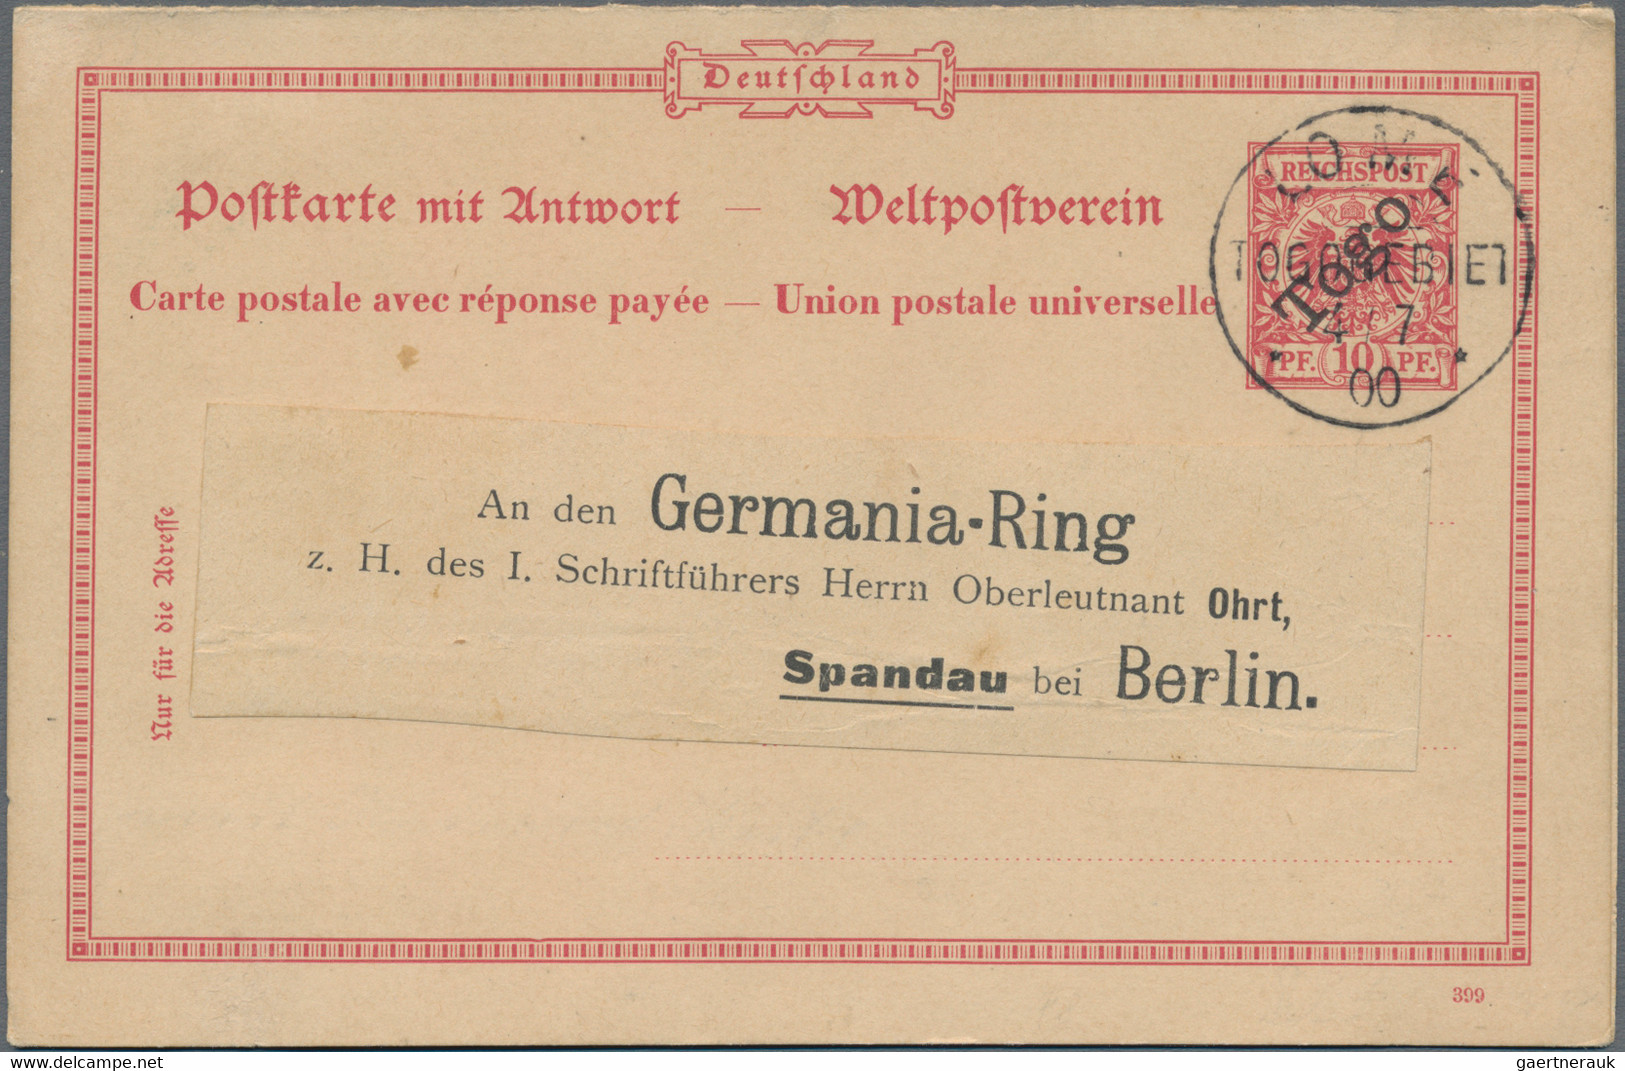 Deutsche Auslandspostämter + Kolonien: 1882/1914, Partie von 17 gebrauchten Ganzsachen, dabei Türkei